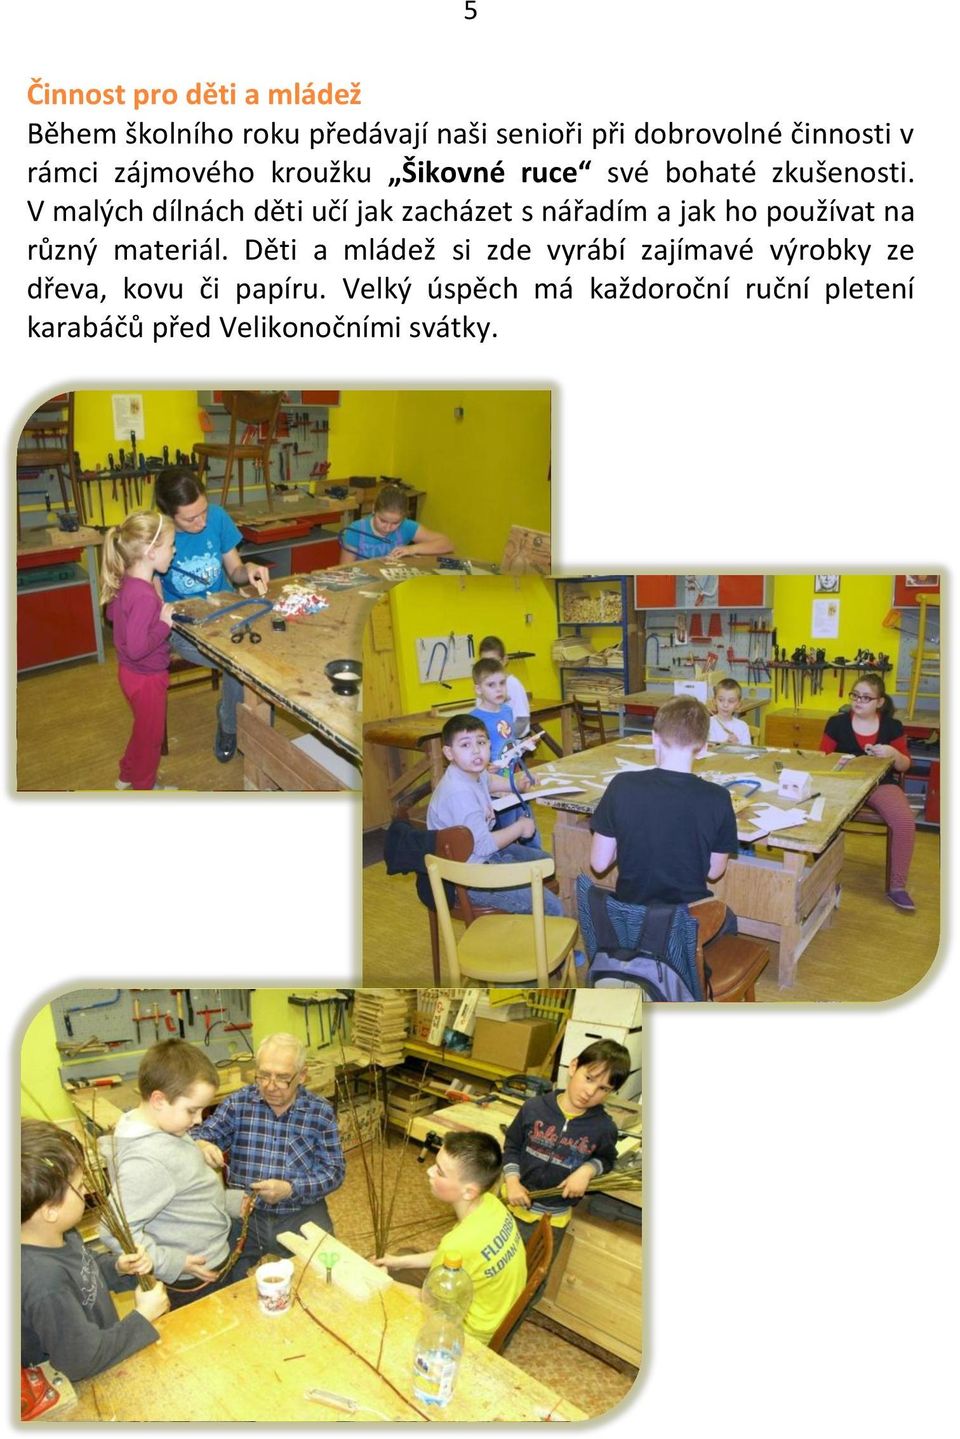 V malých dílnách děti učí jak zacházet s nářadím a jak ho používat na různý materiál.